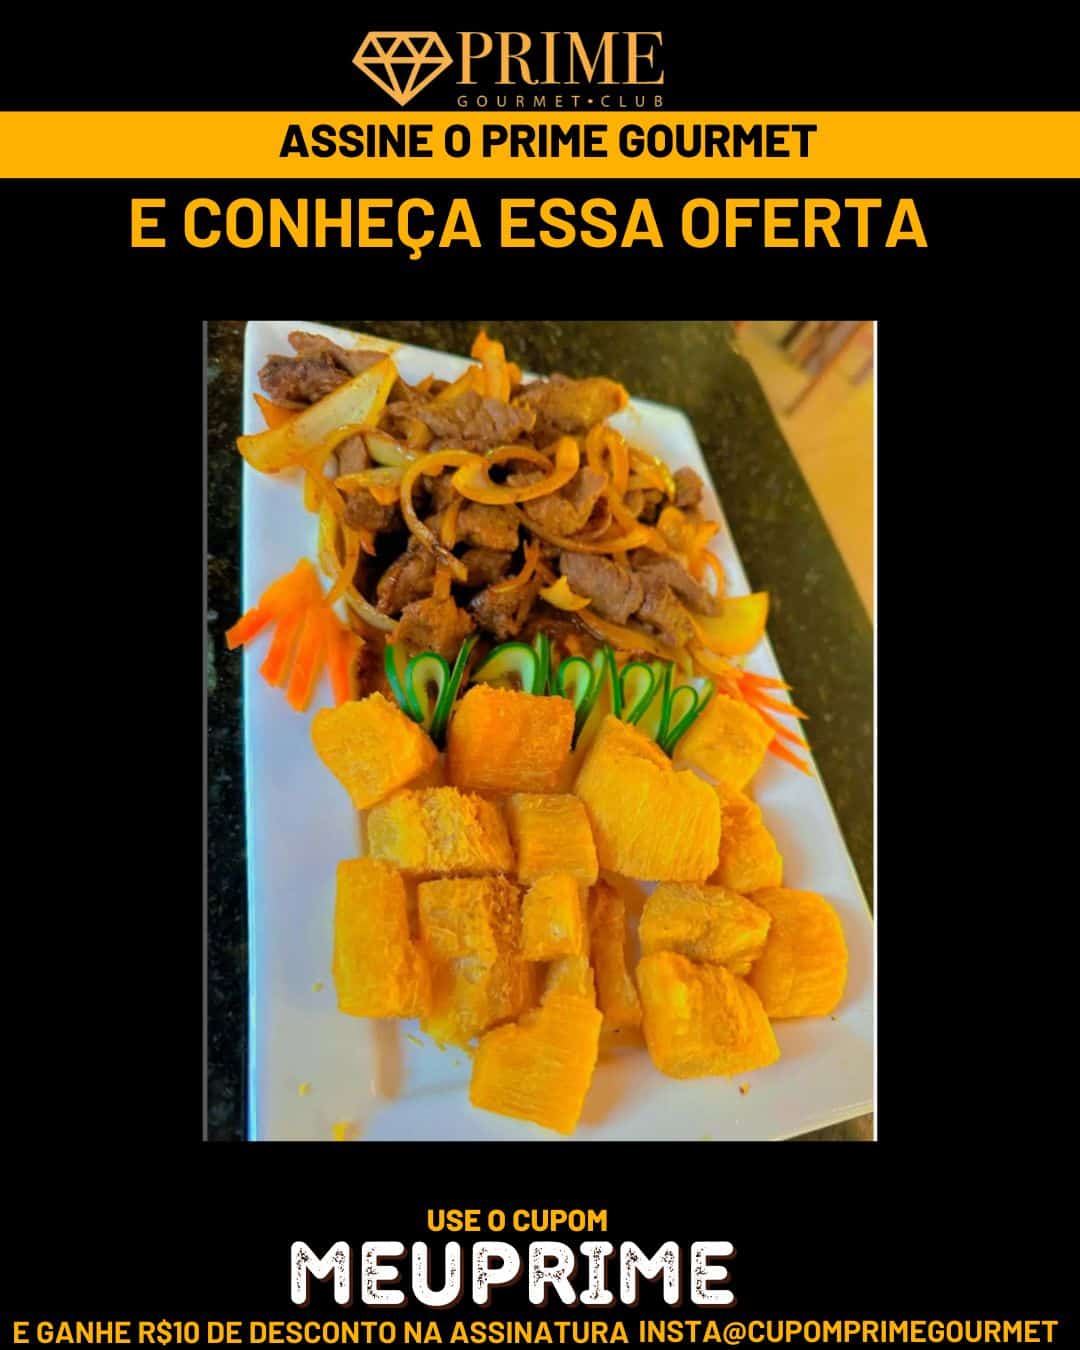 Prime Gourmet Maranhão e Região - Restaurante Sabores dos Lençois